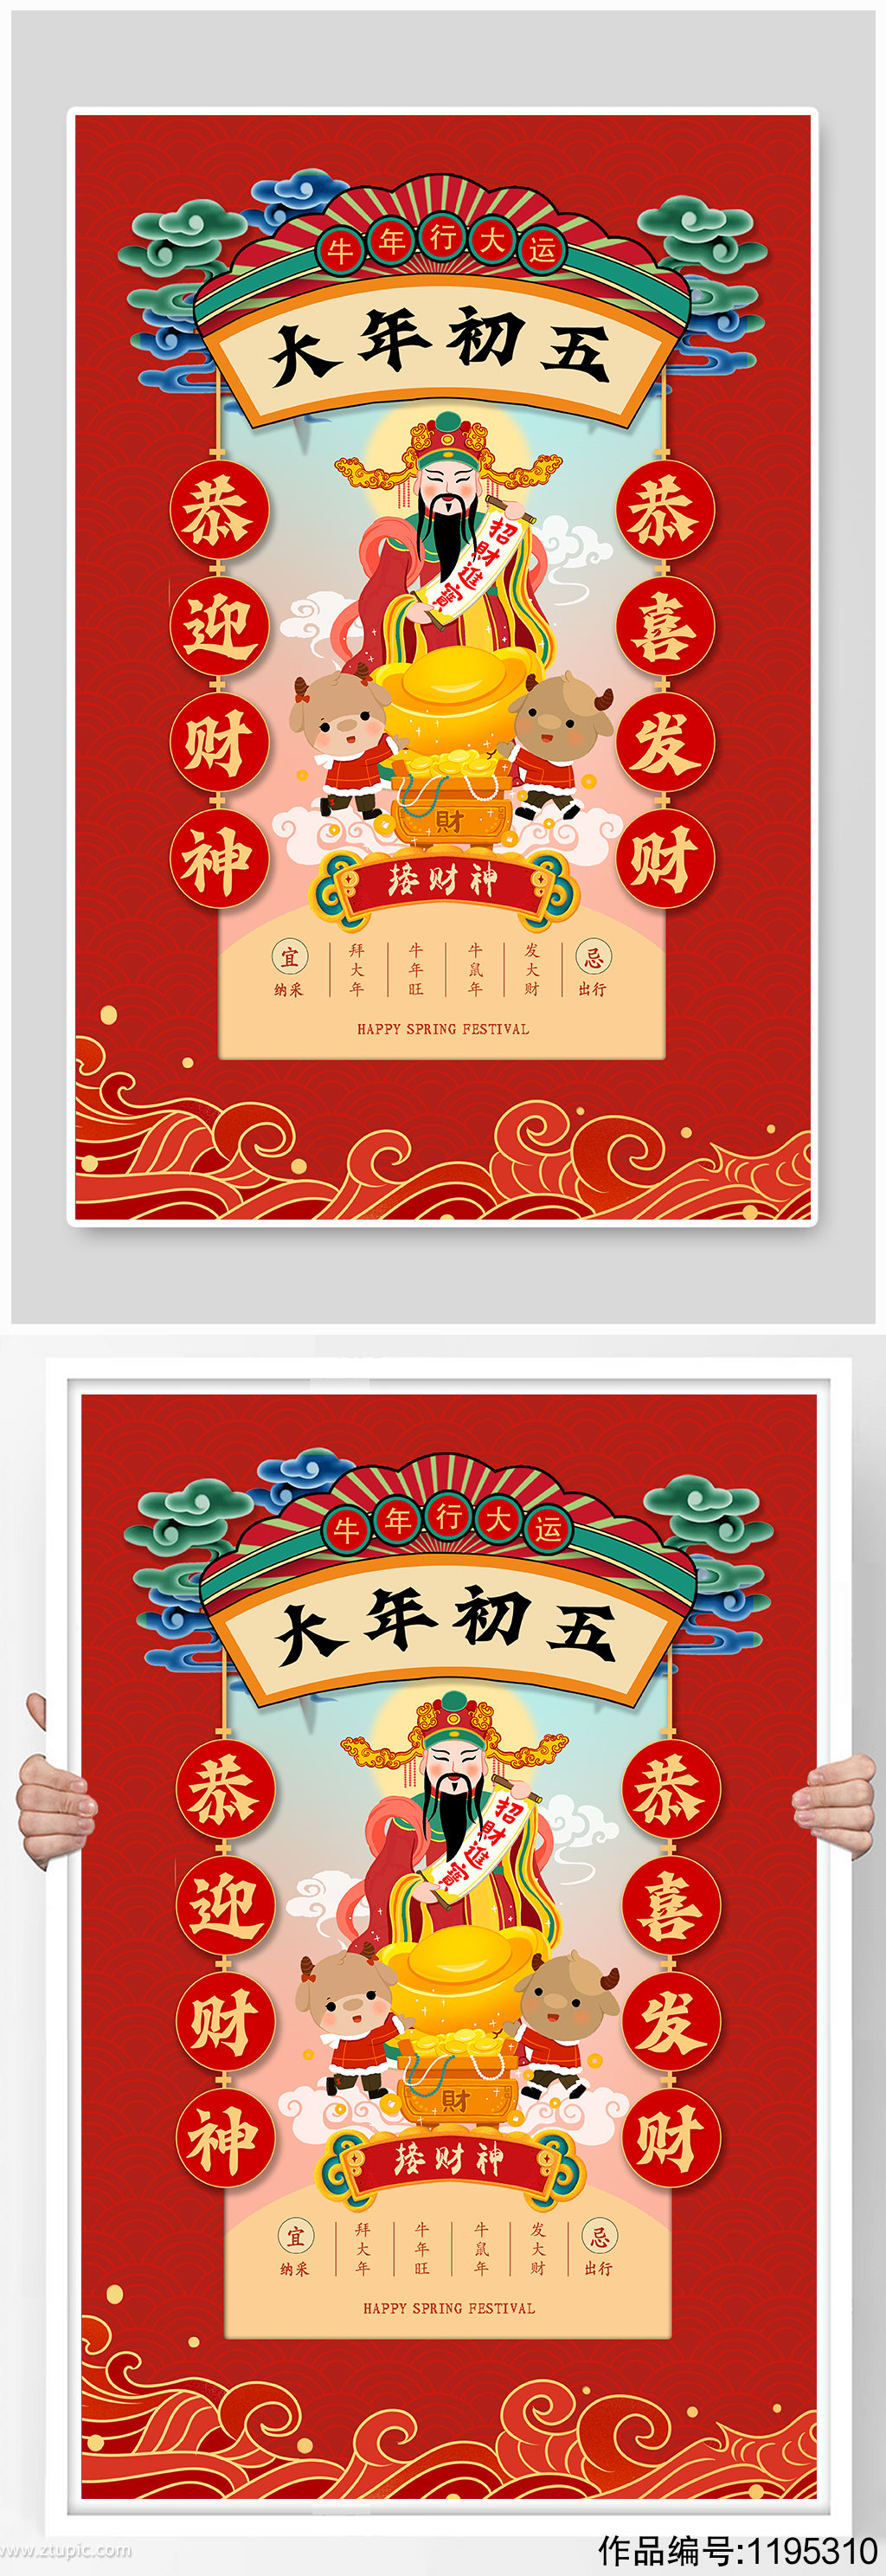 红色中国风大年初五迎财神海报